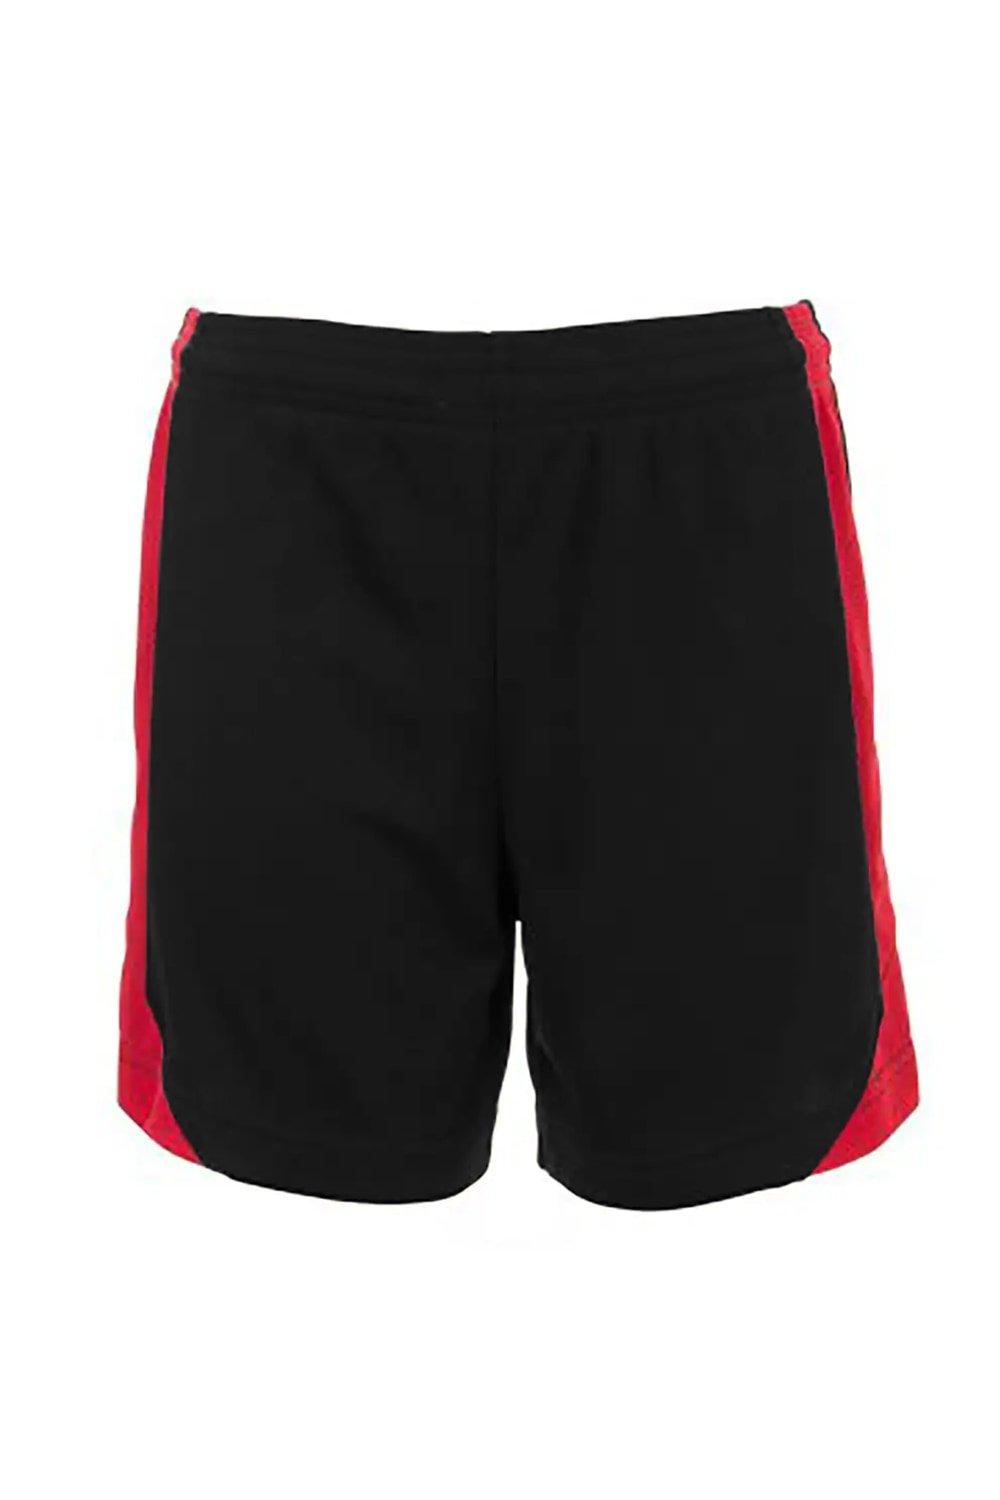 Olimpico Football Shorts